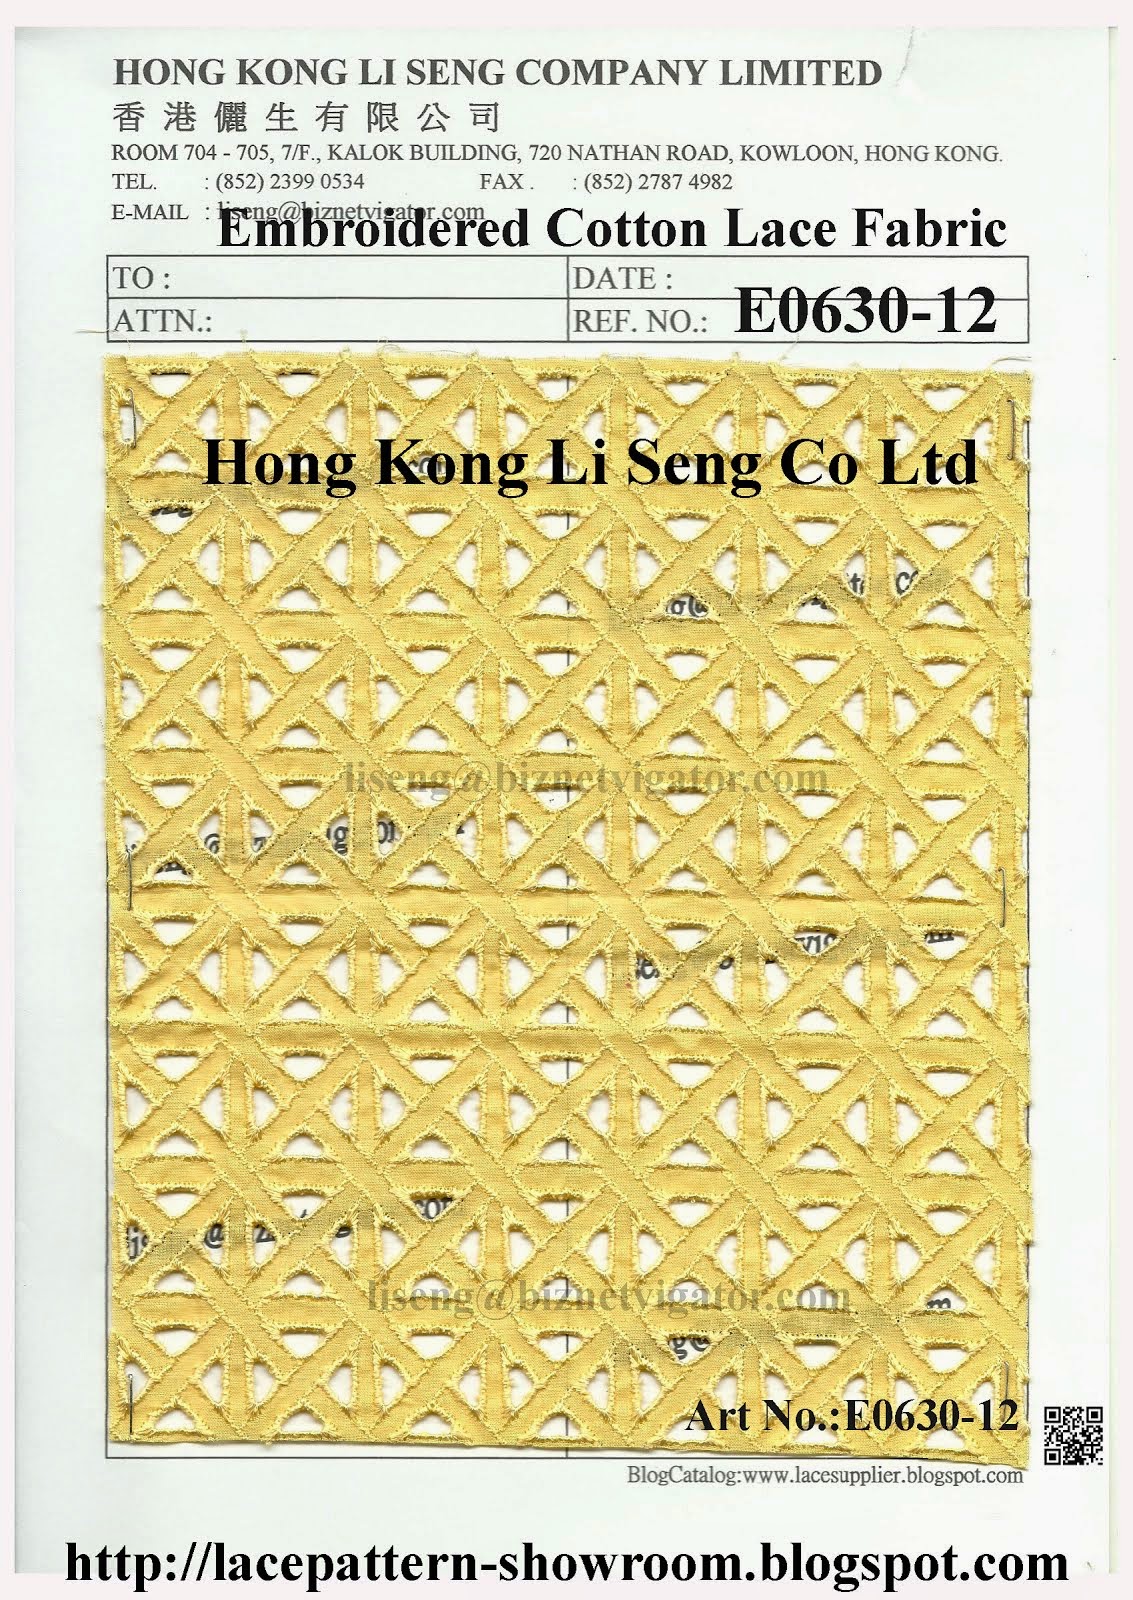 New Pattern Emb Cotton Lace Fabric Manufacturer Wholesaler Supplier - Hong Kong Li Seng Co Ltd